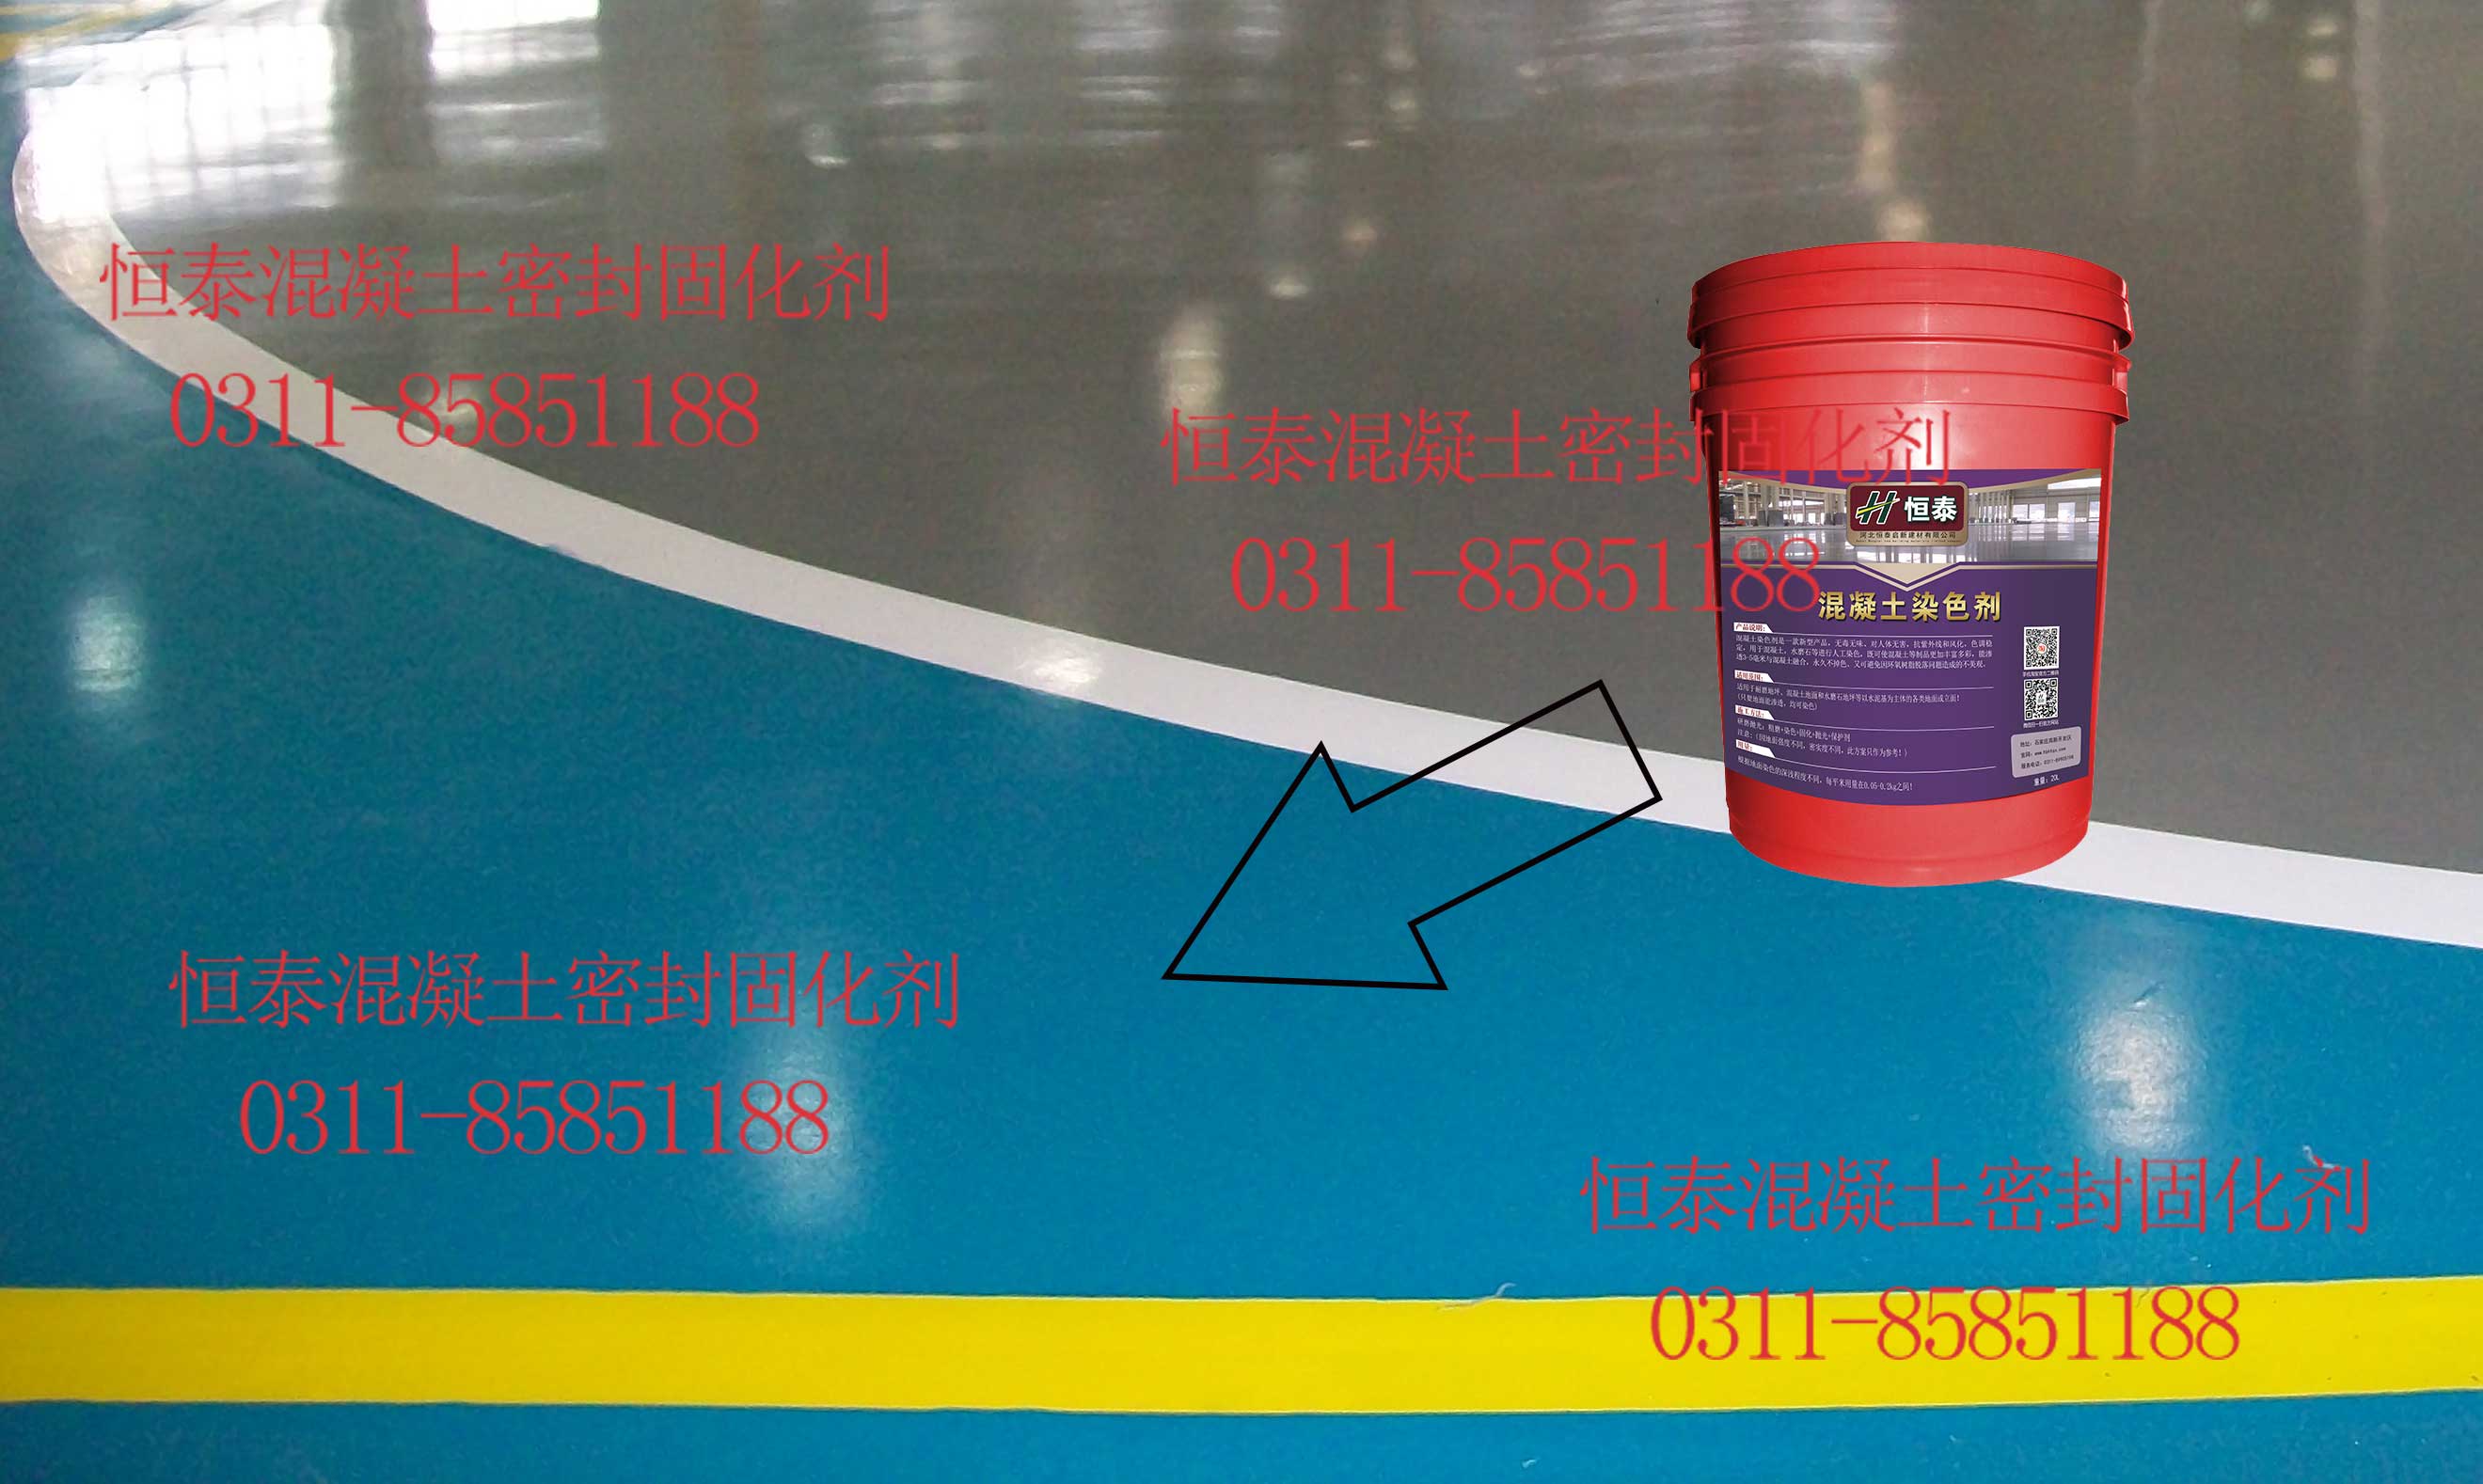 固化地面之后影响混凝土着色剂使用效果因素